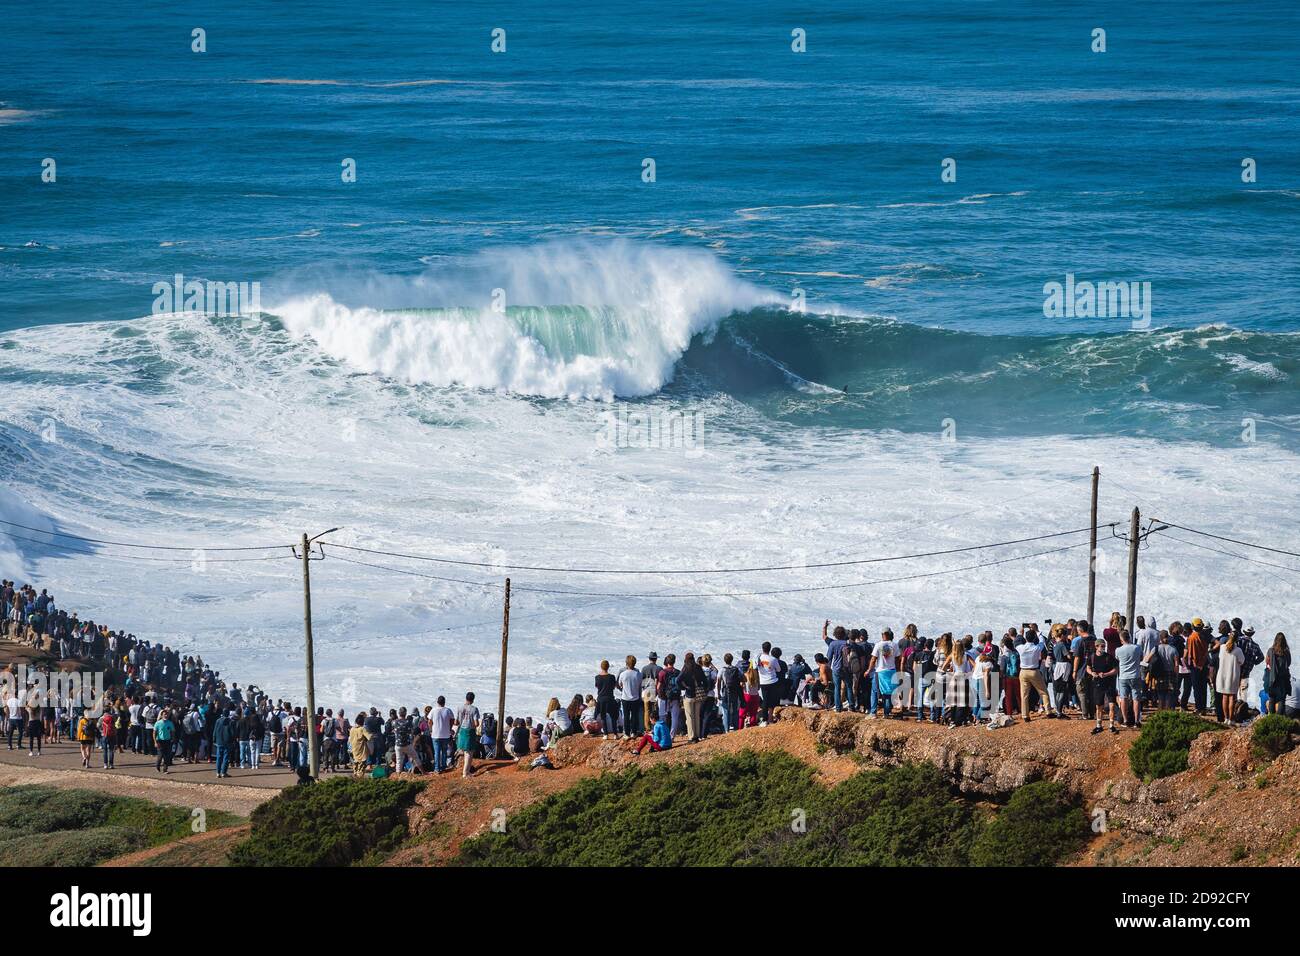 Les gens qui regardent le surfeur de grandes vagues monter sur une vague géante à la plage de Praia do Norte à Nazaré, au Portugal. Banque D'Images